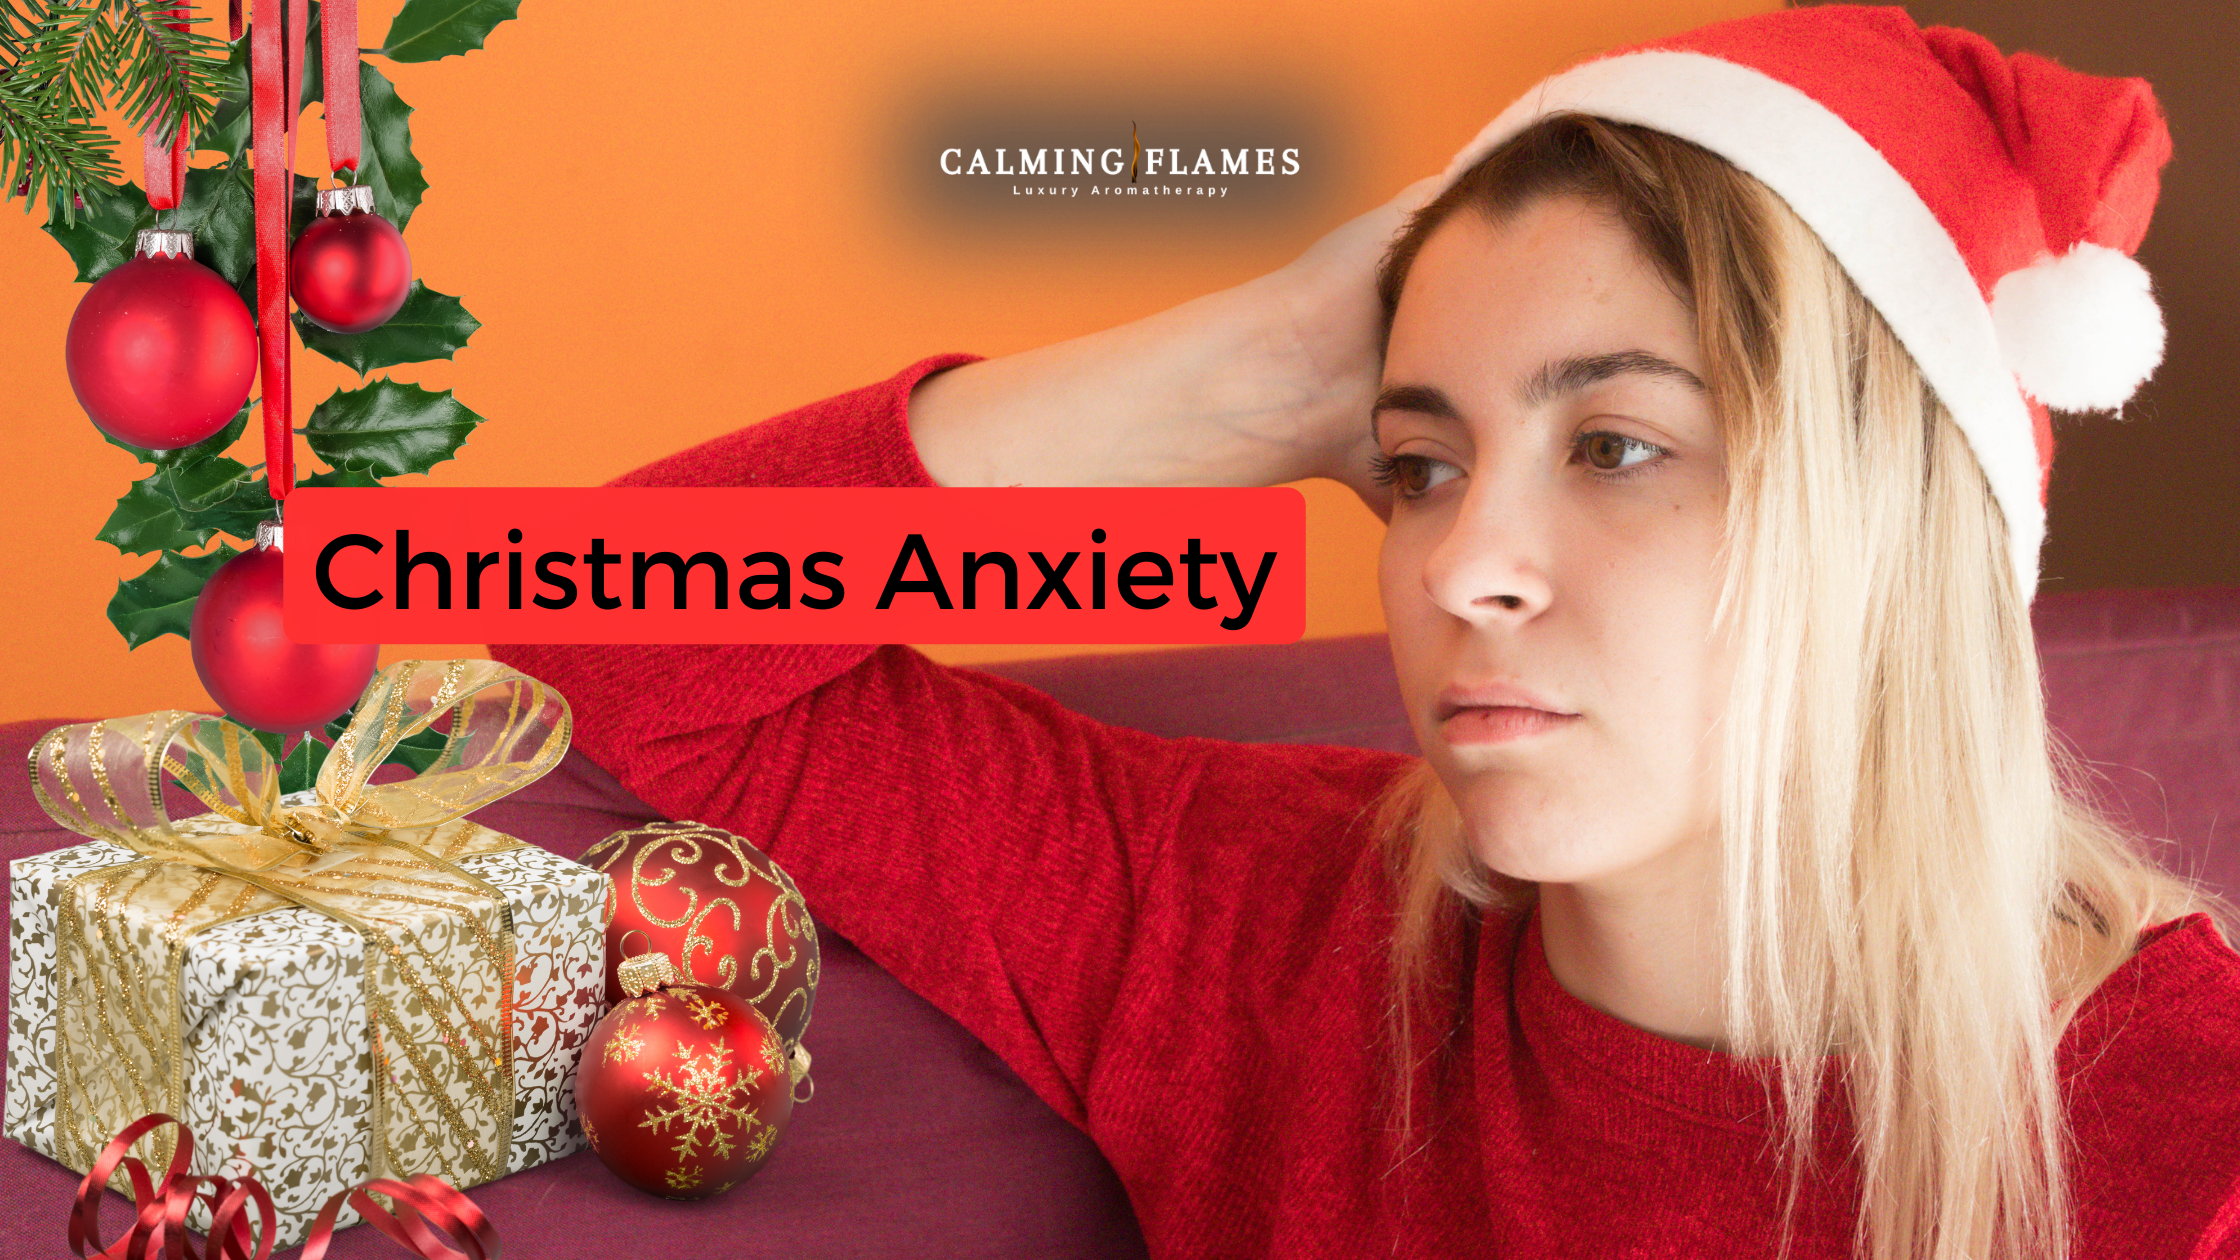 Managing Holiday Anxiety